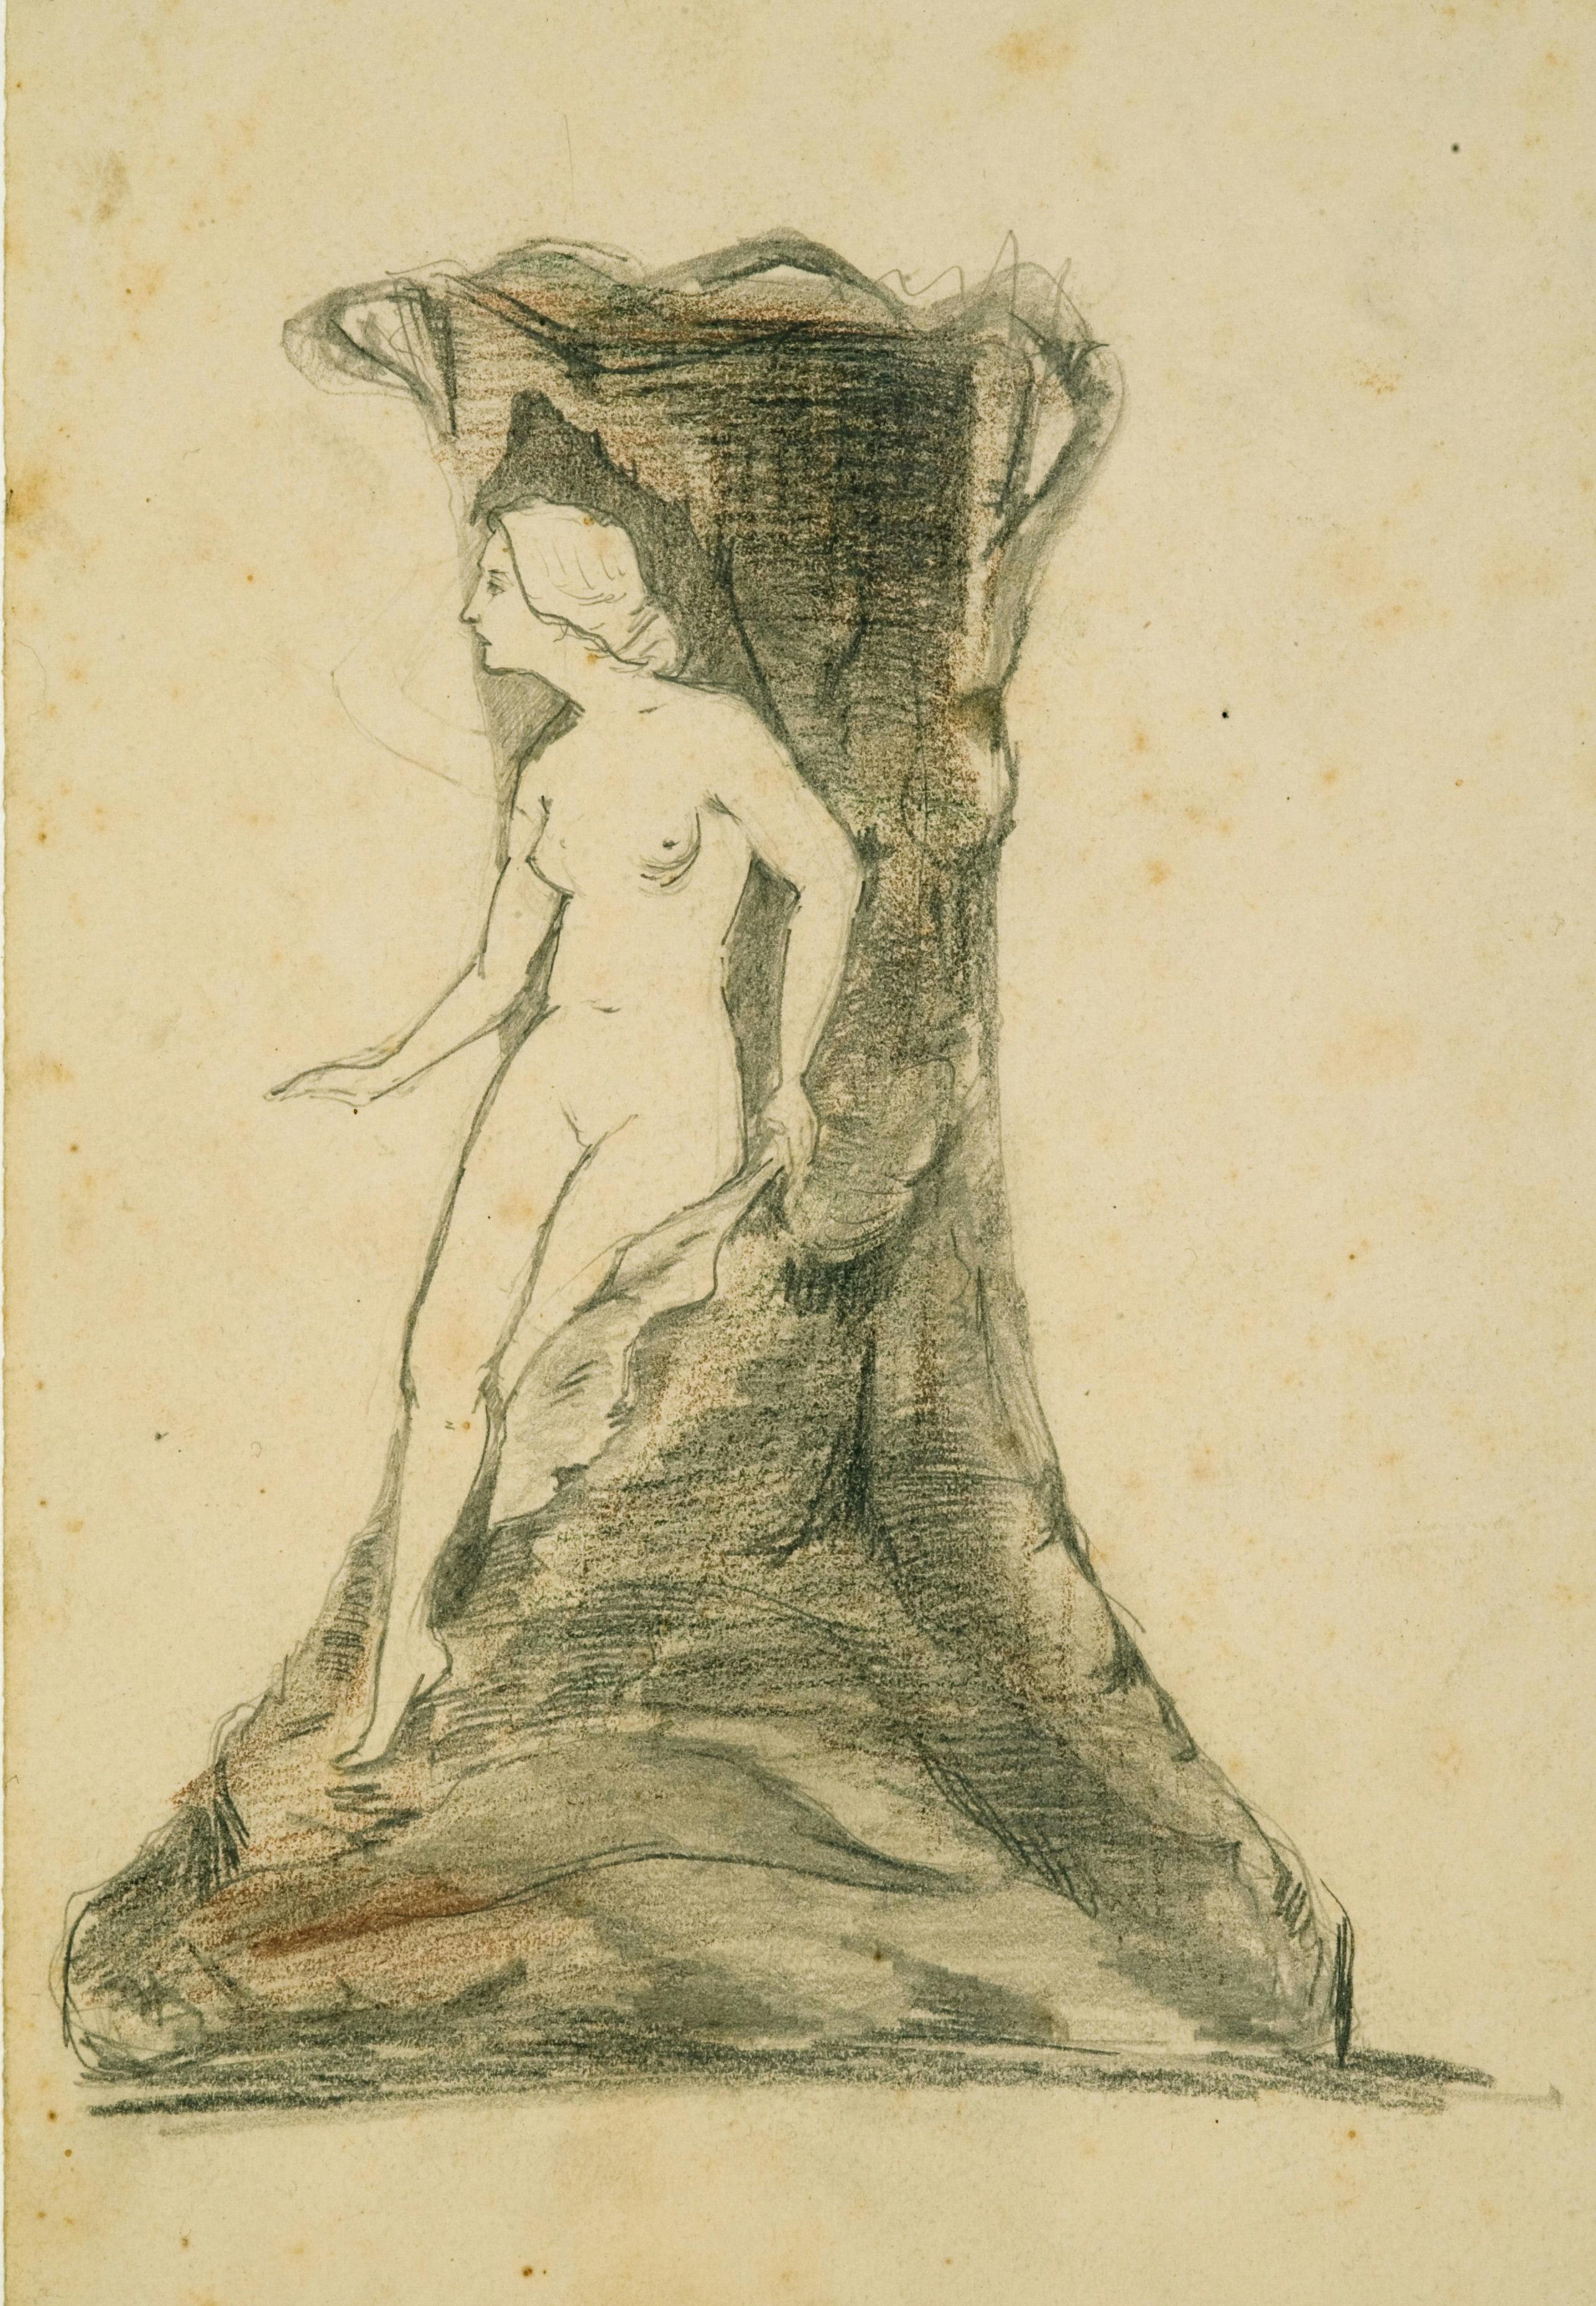 Disegno a matita con una figura femminile nuda che esce da un tronco di albero